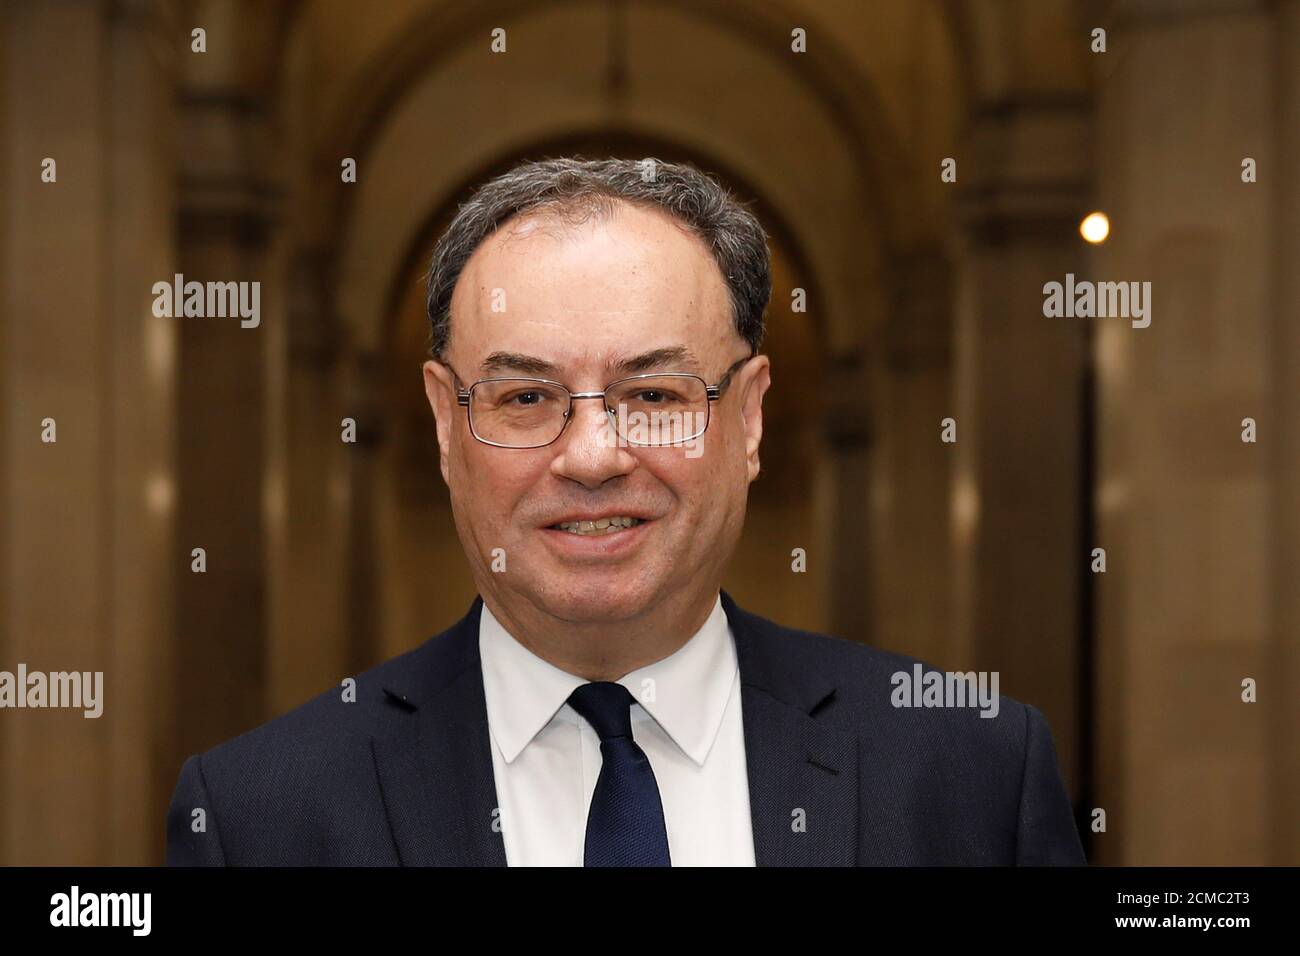 Il Governatore della Banca d'Inghilterra Andrew Bailey pose per una fotografia il primo giorno del suo nuovo ruolo alla Banca Centrale di Londra, Gran Bretagna, 16 marzo 2020. Tolga Akmen/Pool via REUTERS Foto Stock